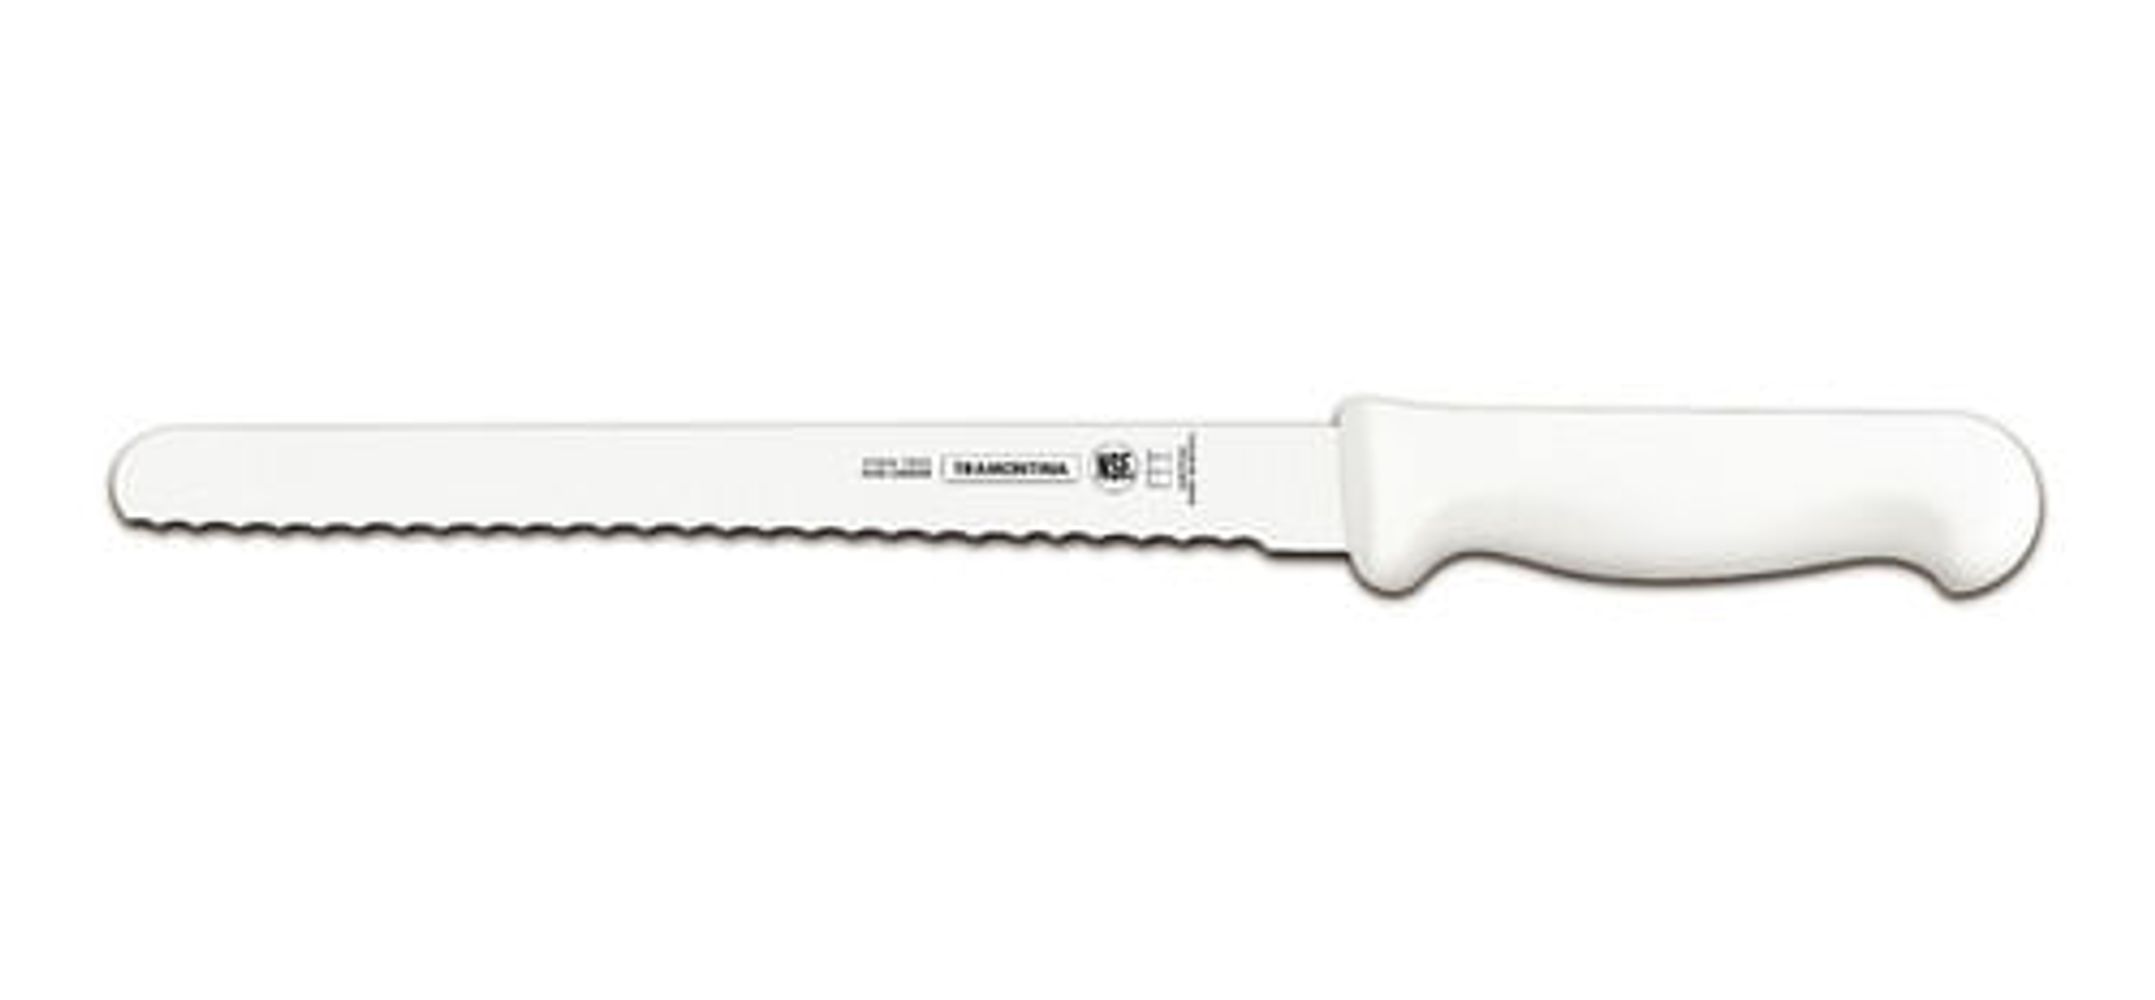 Las mejores ofertas en Cuchillos de Pan de acero inoxidable Victorinox  cuchillos